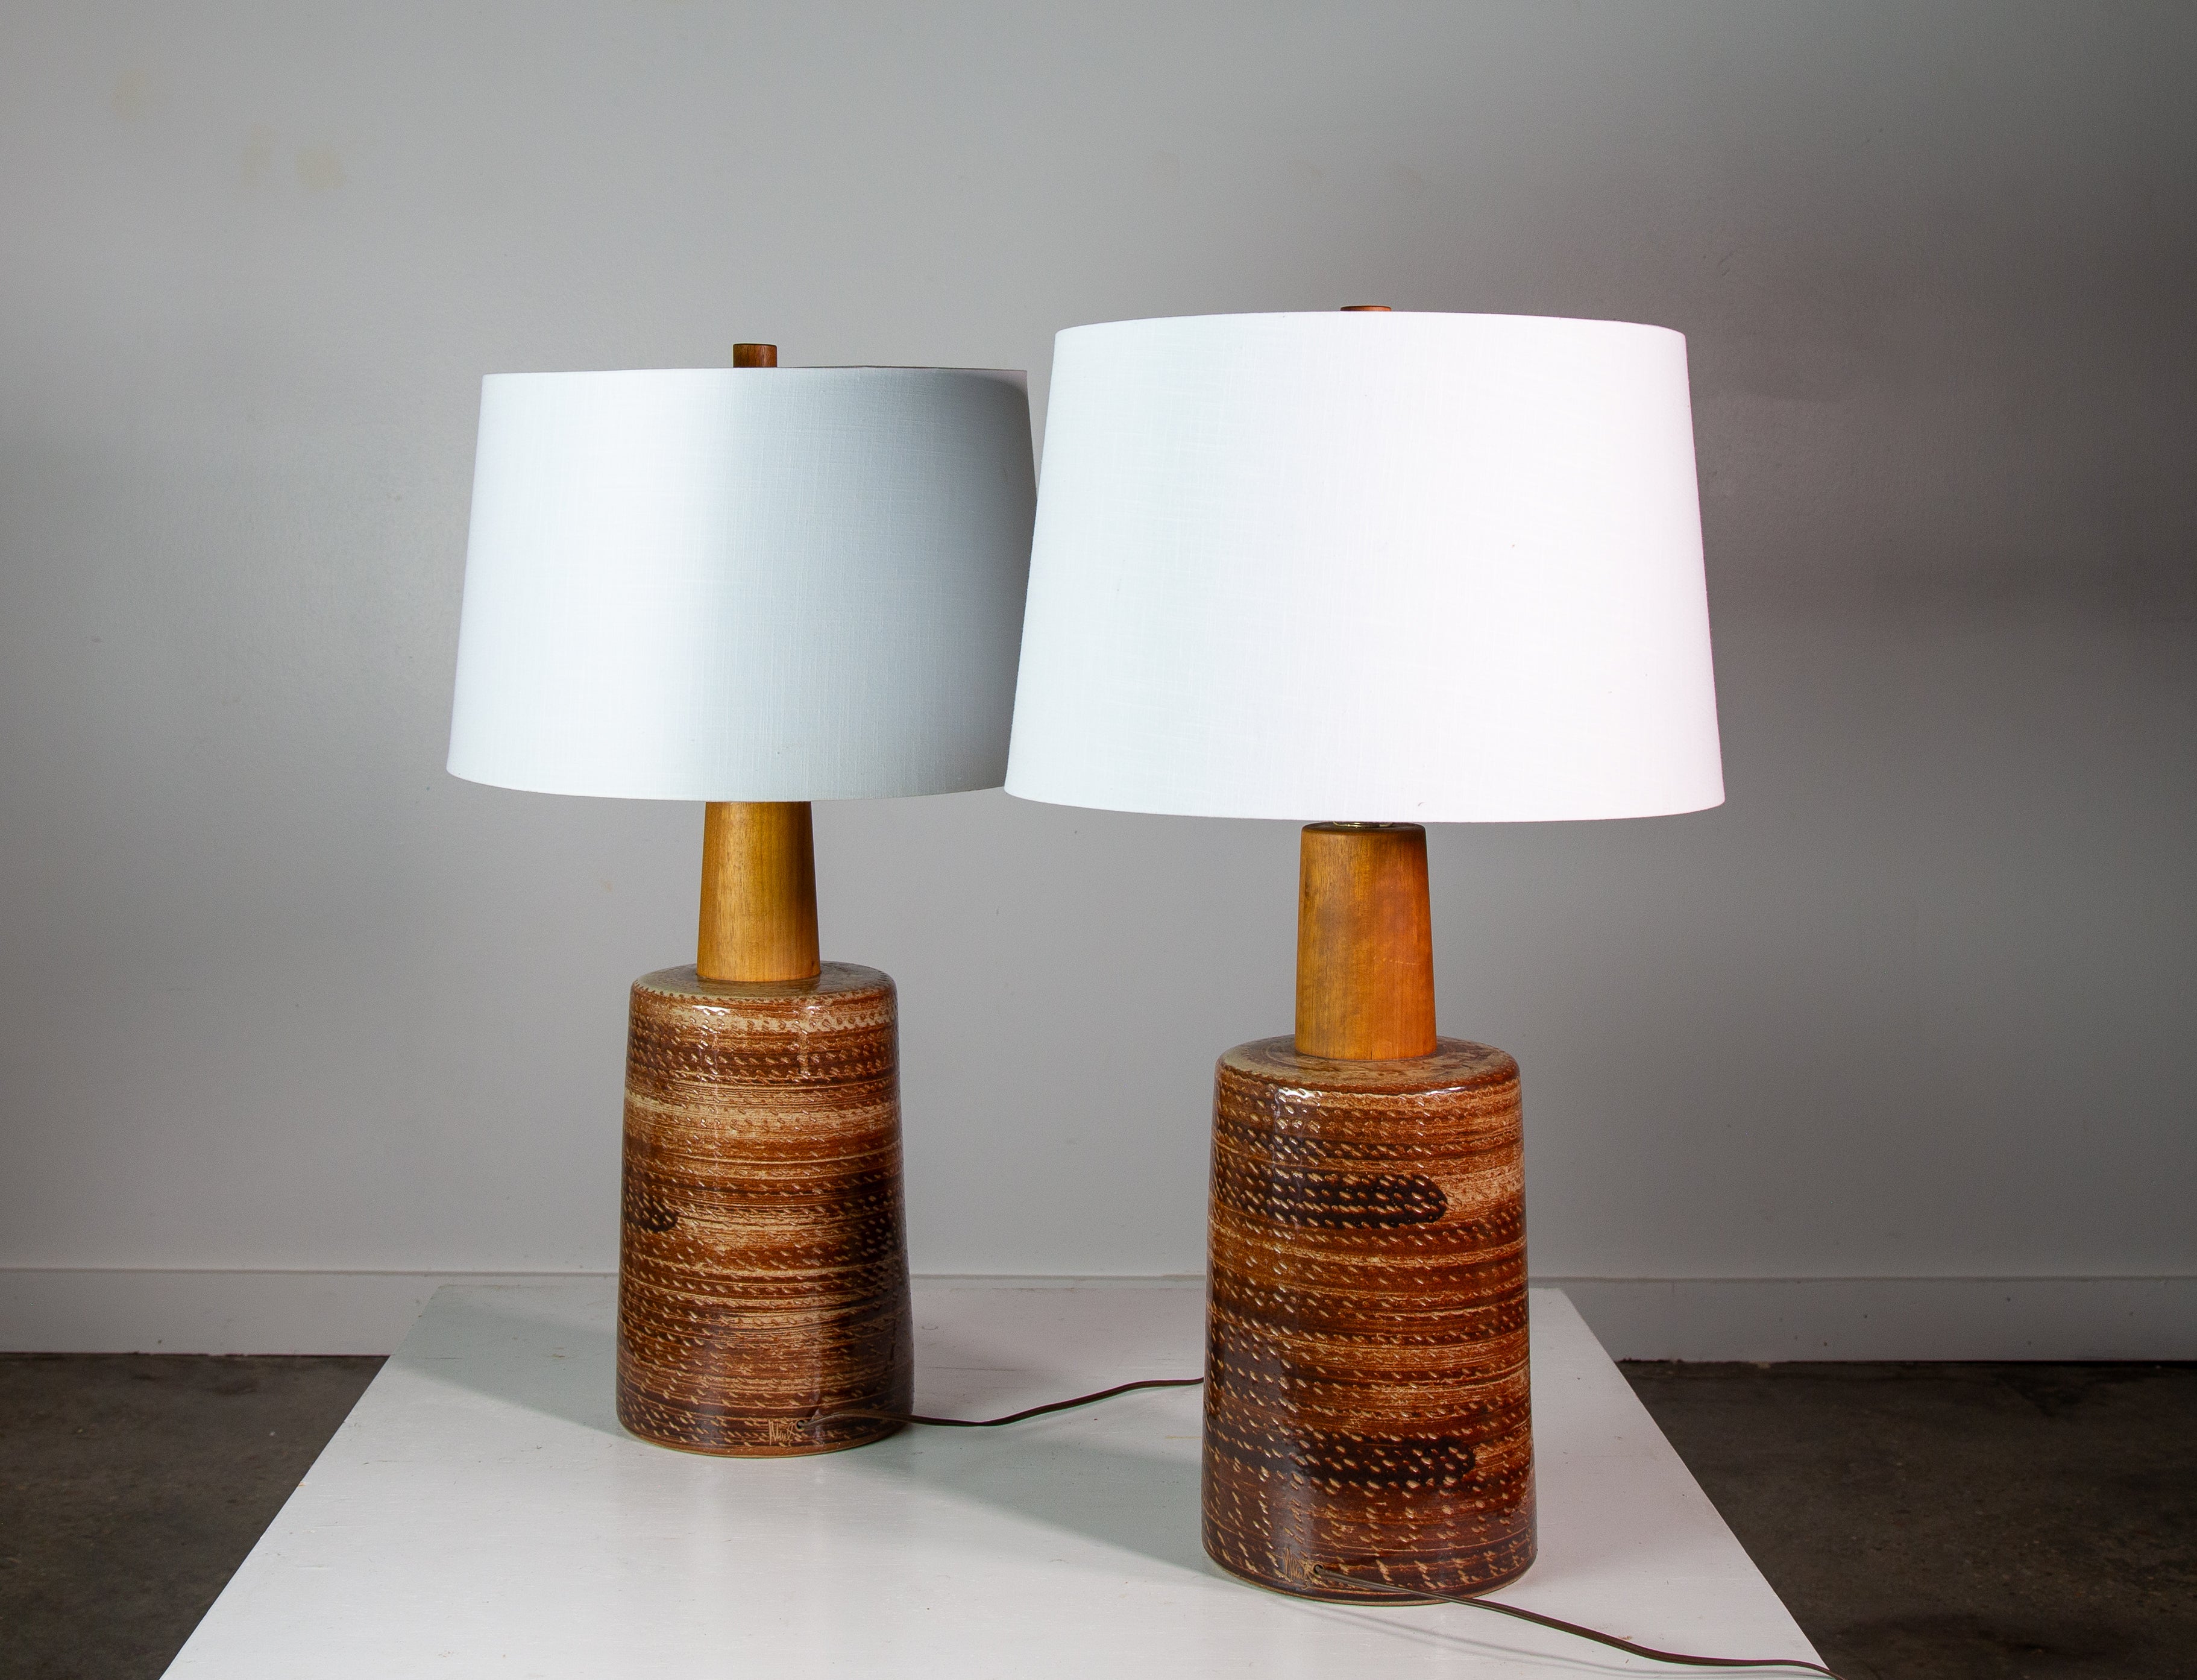 Lampe de collection des années 1960 conçue par Jane et Gordon Martz des Marshall Studios à Veedersburg (Indiana). Ces lampes sont très recherchées et apparaissent dans les designs du monde entier. Alliant sophistication et modernité, ces lampes ne